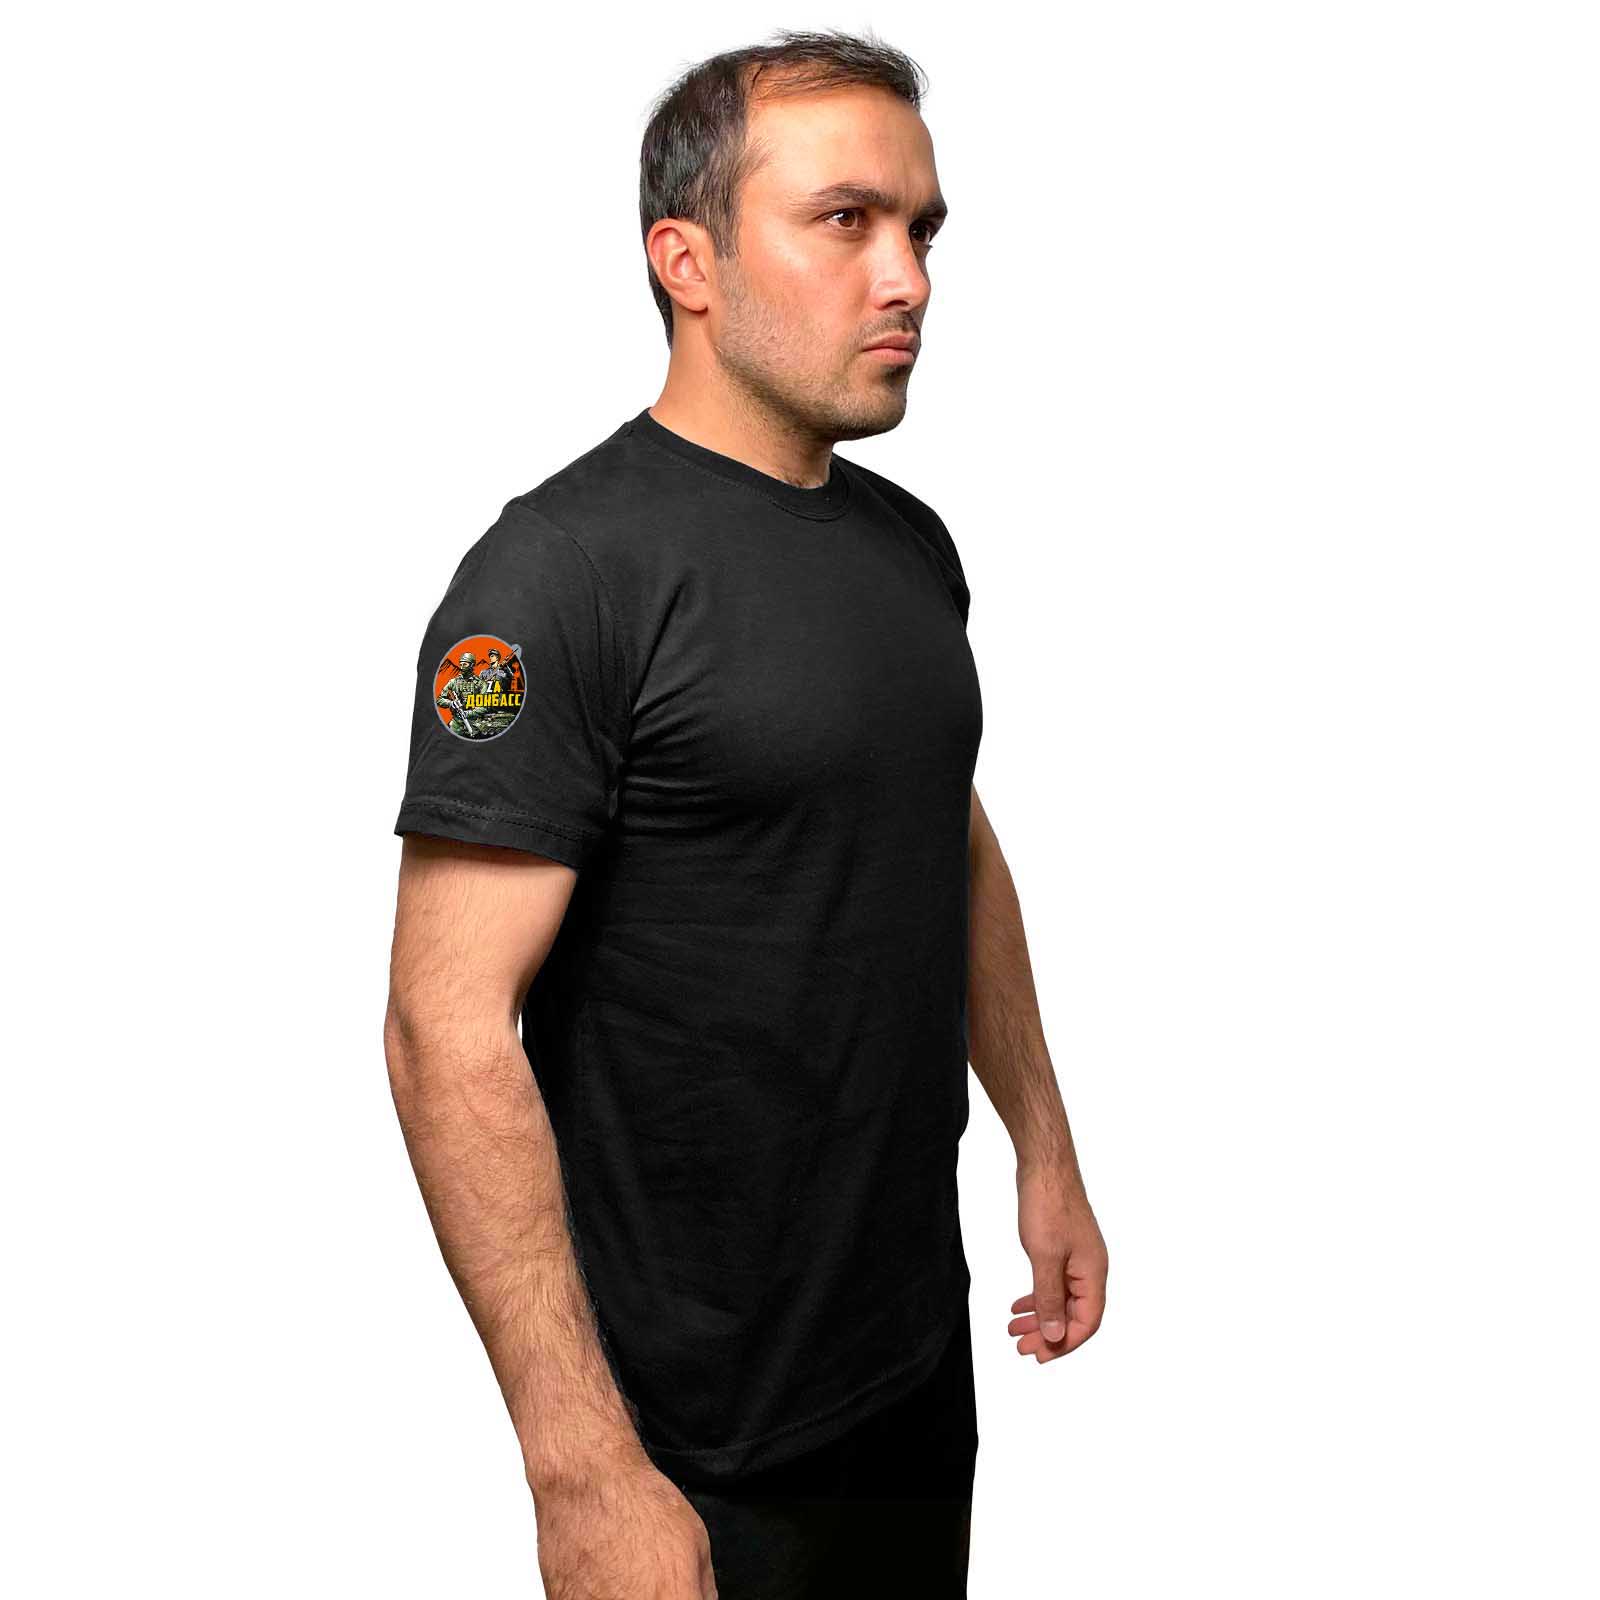 Чёрная футболка с термопринтом "Zа Донбасс" на рукаве